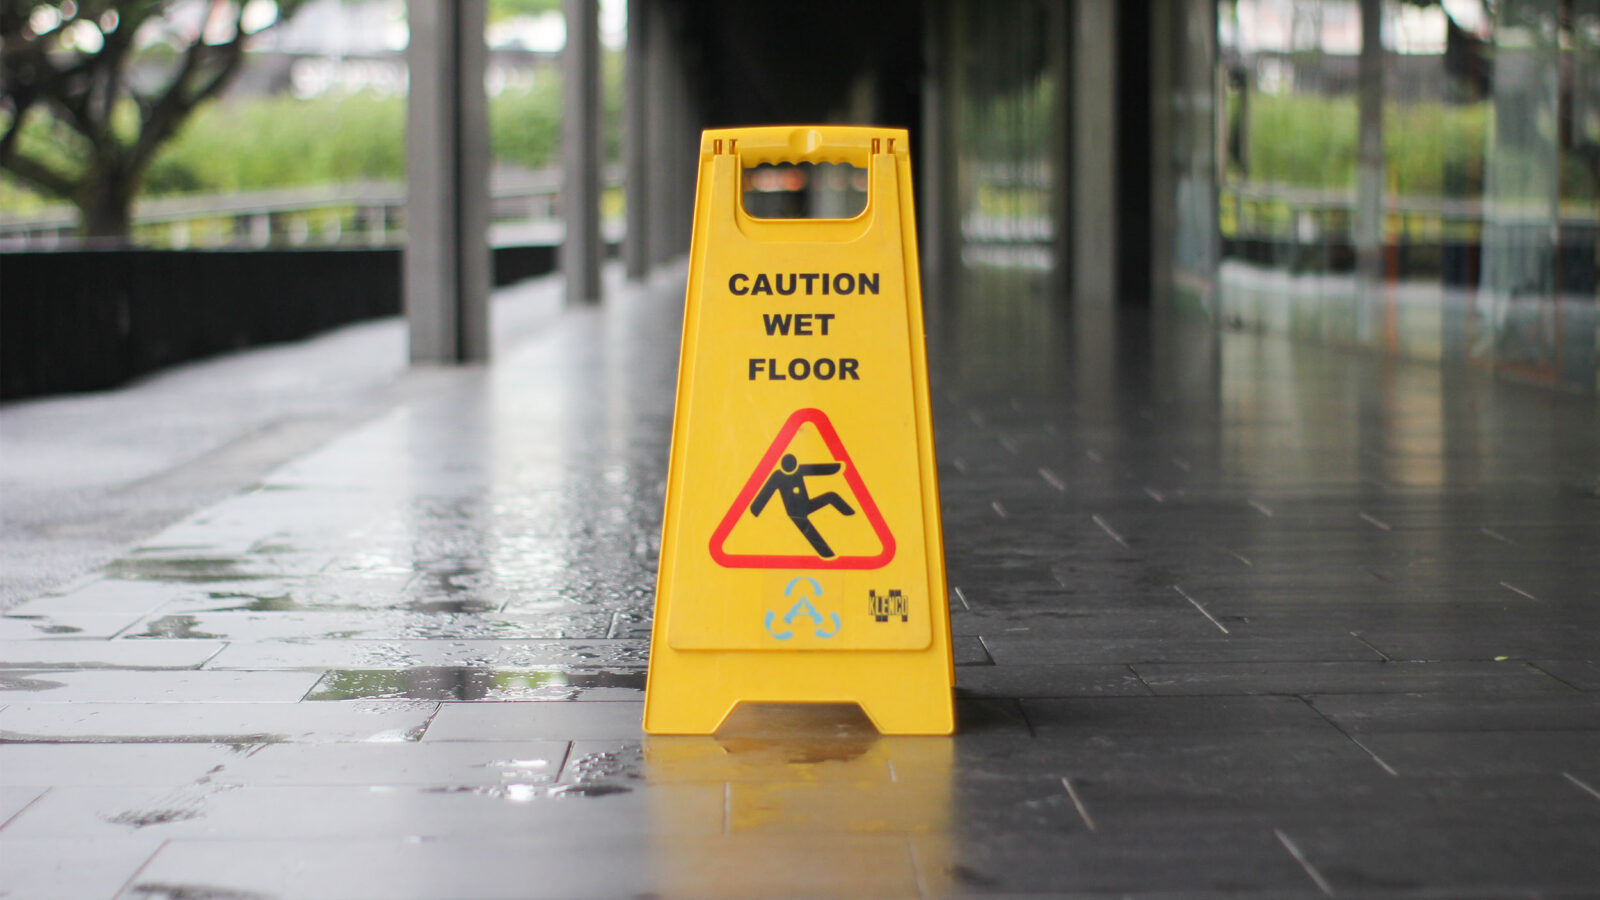 a wet floor sign on an outdoor walkway